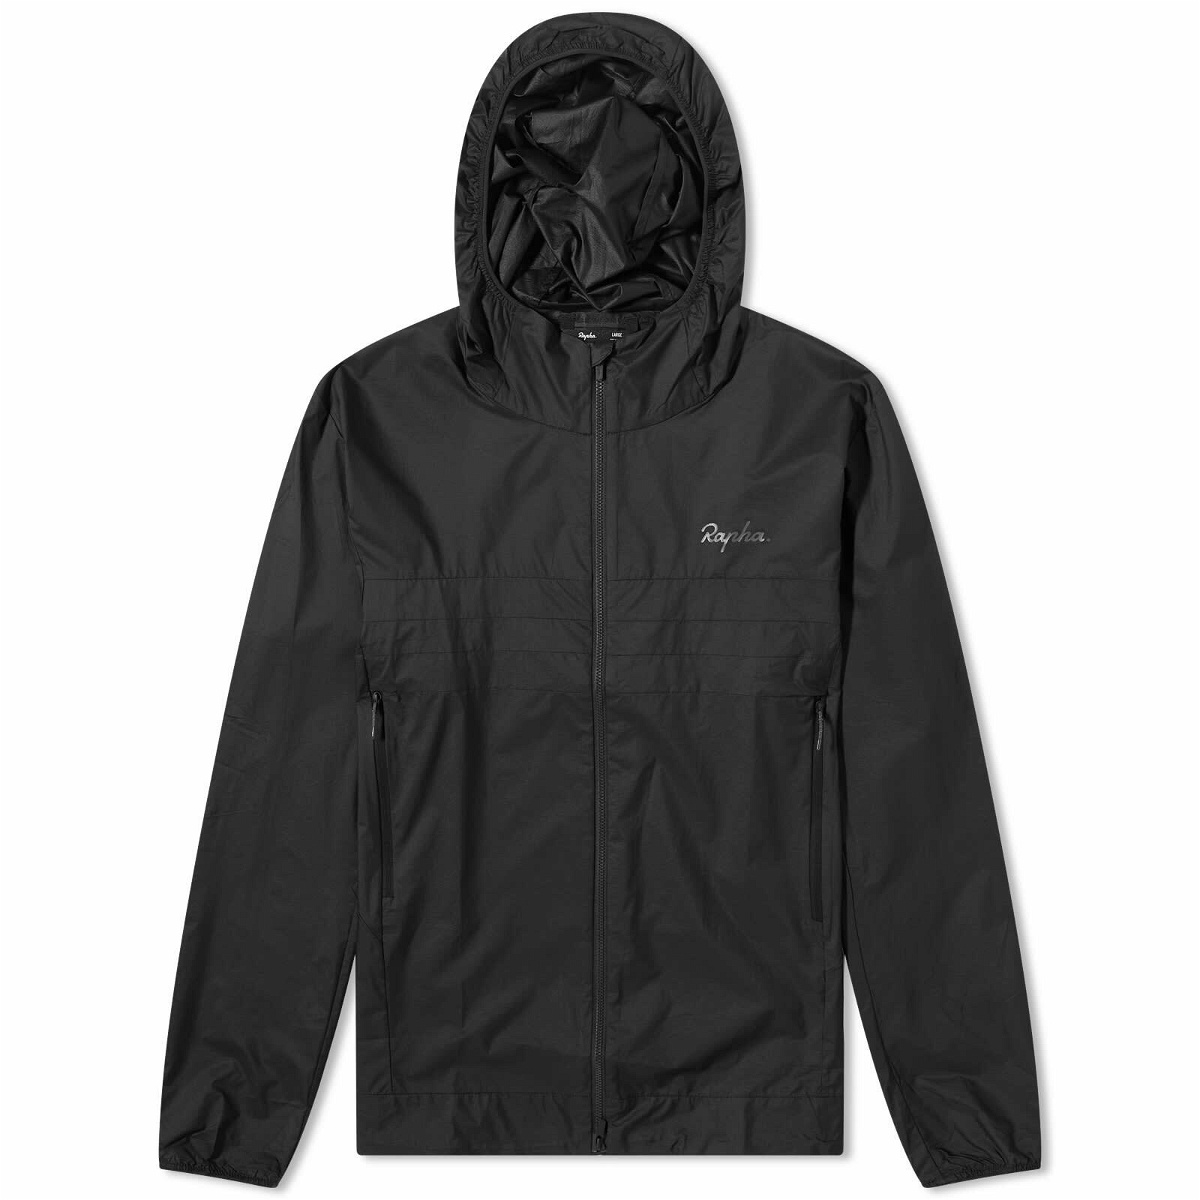 Rapha Men's Explore Hooded Lightweight Jacket in Black/Black Rapha